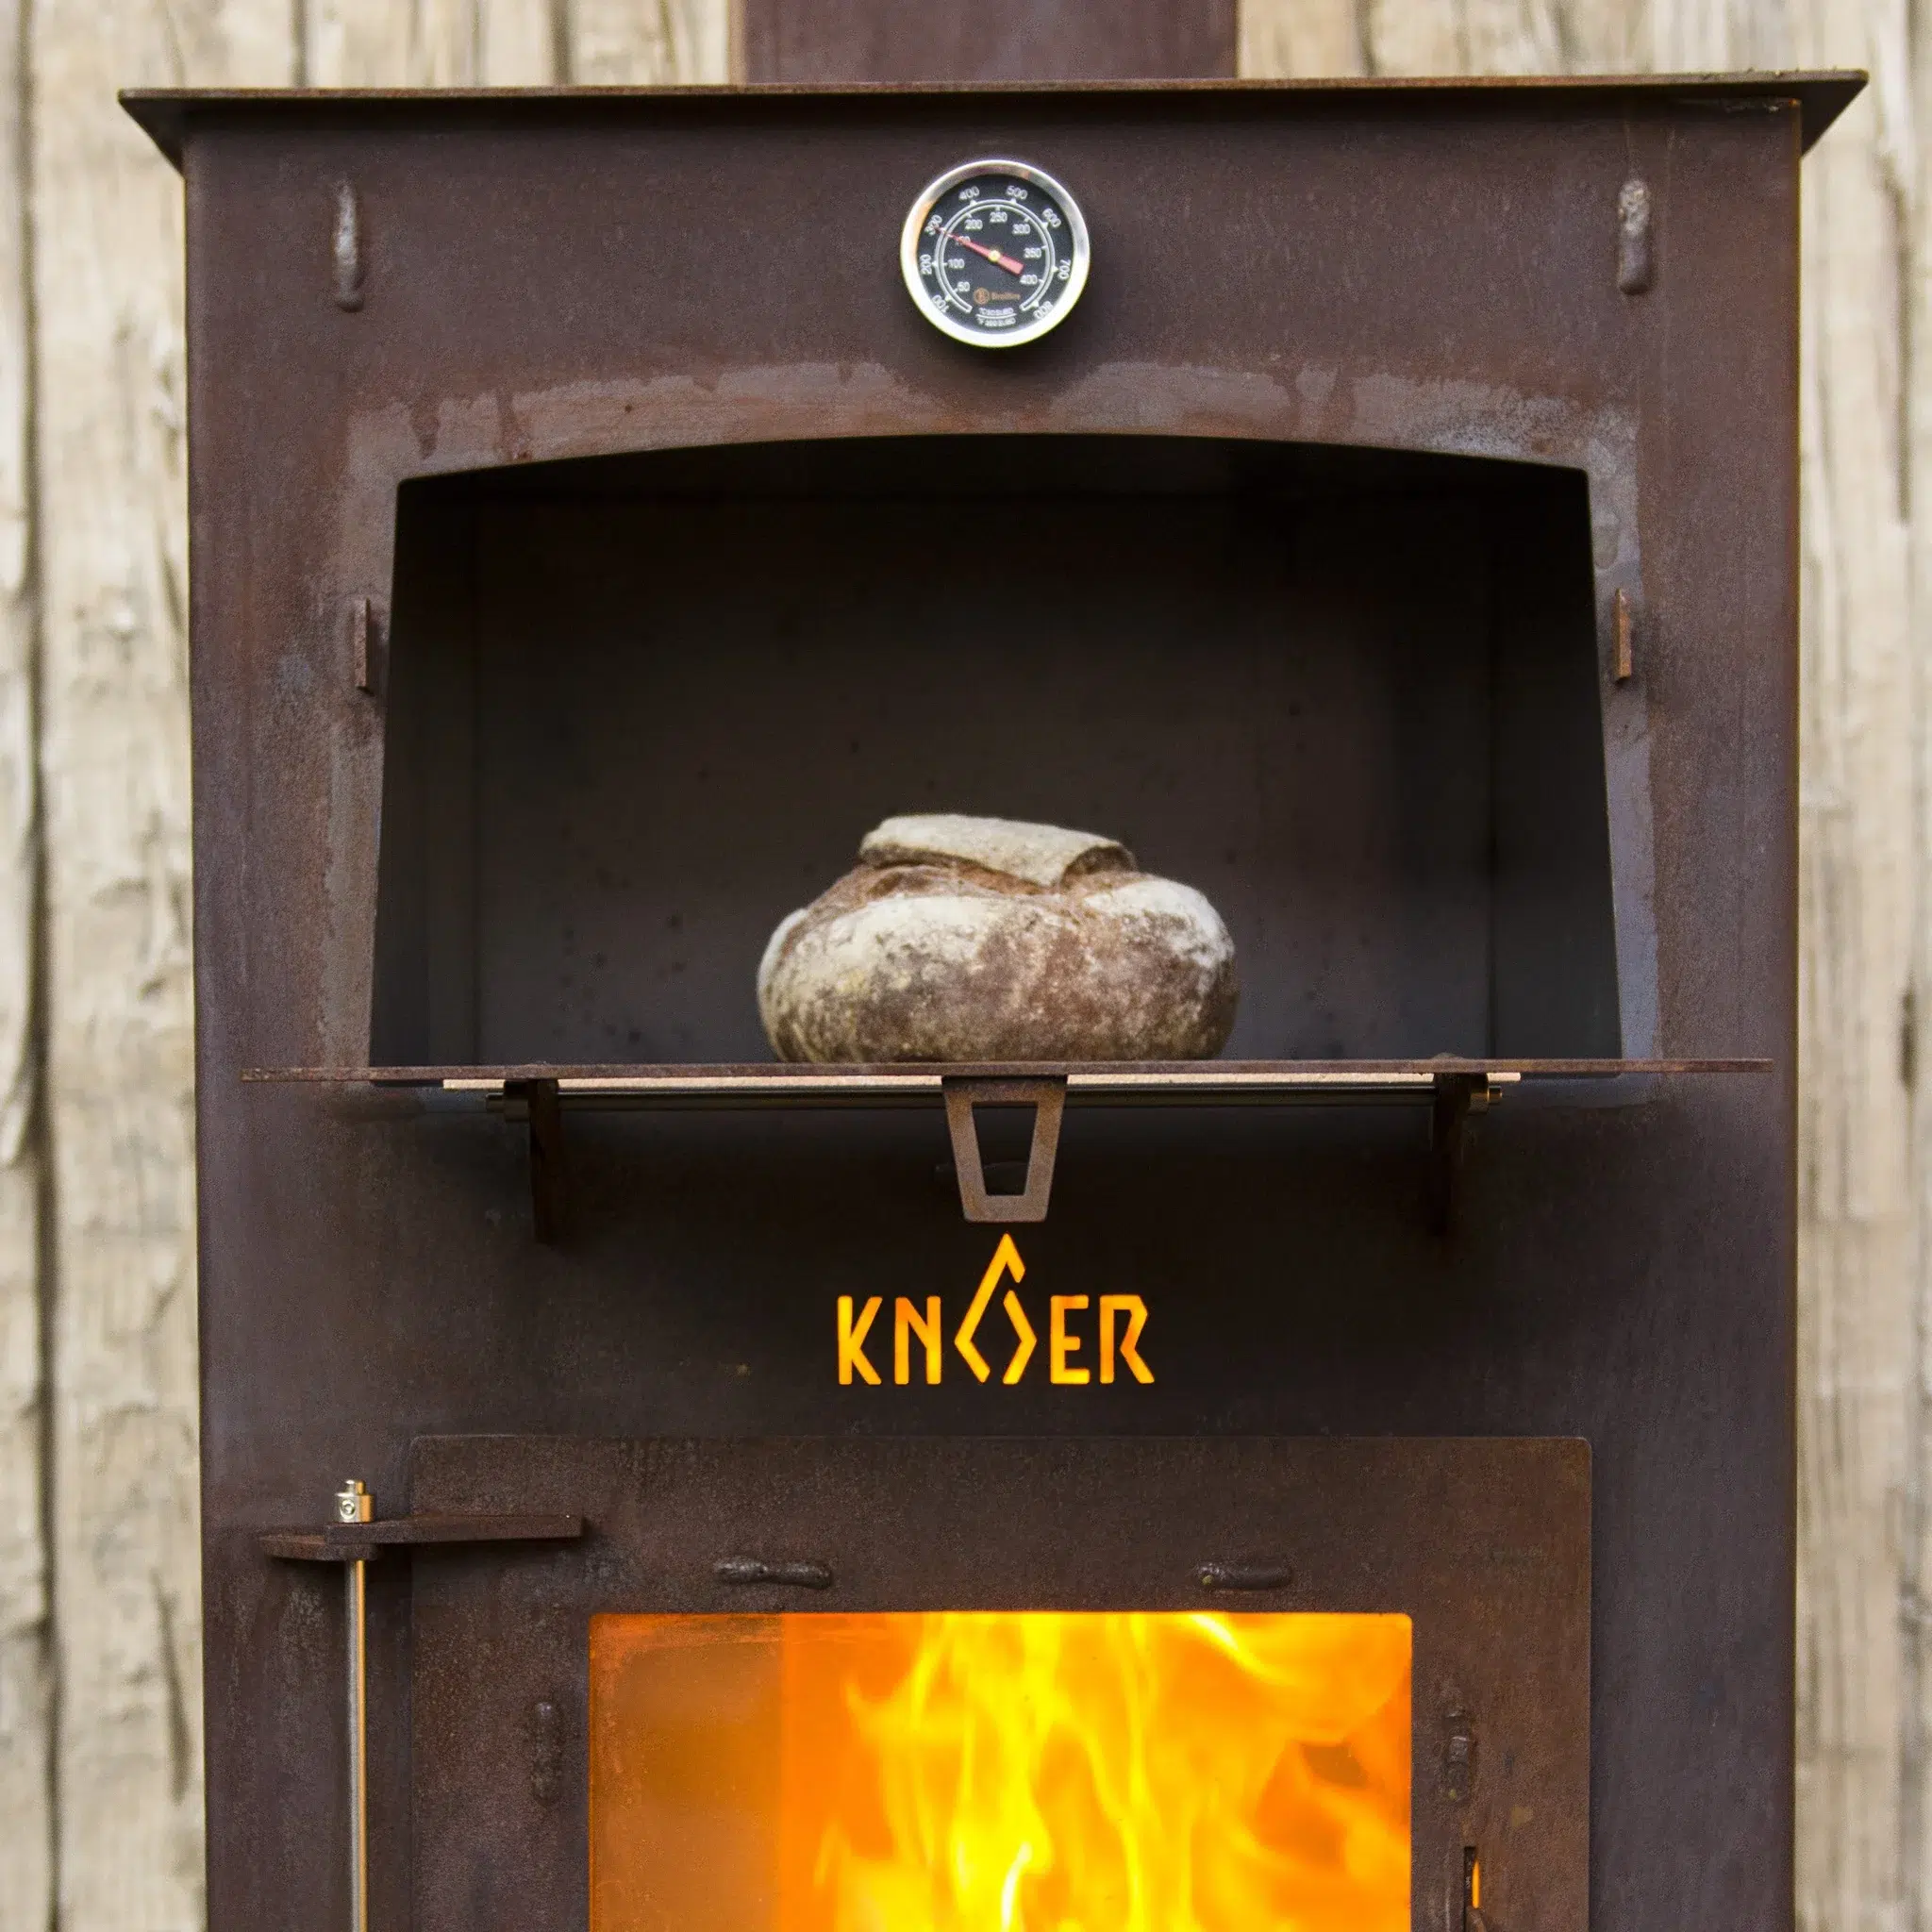 De knoer outdoor oven met gebakken brood